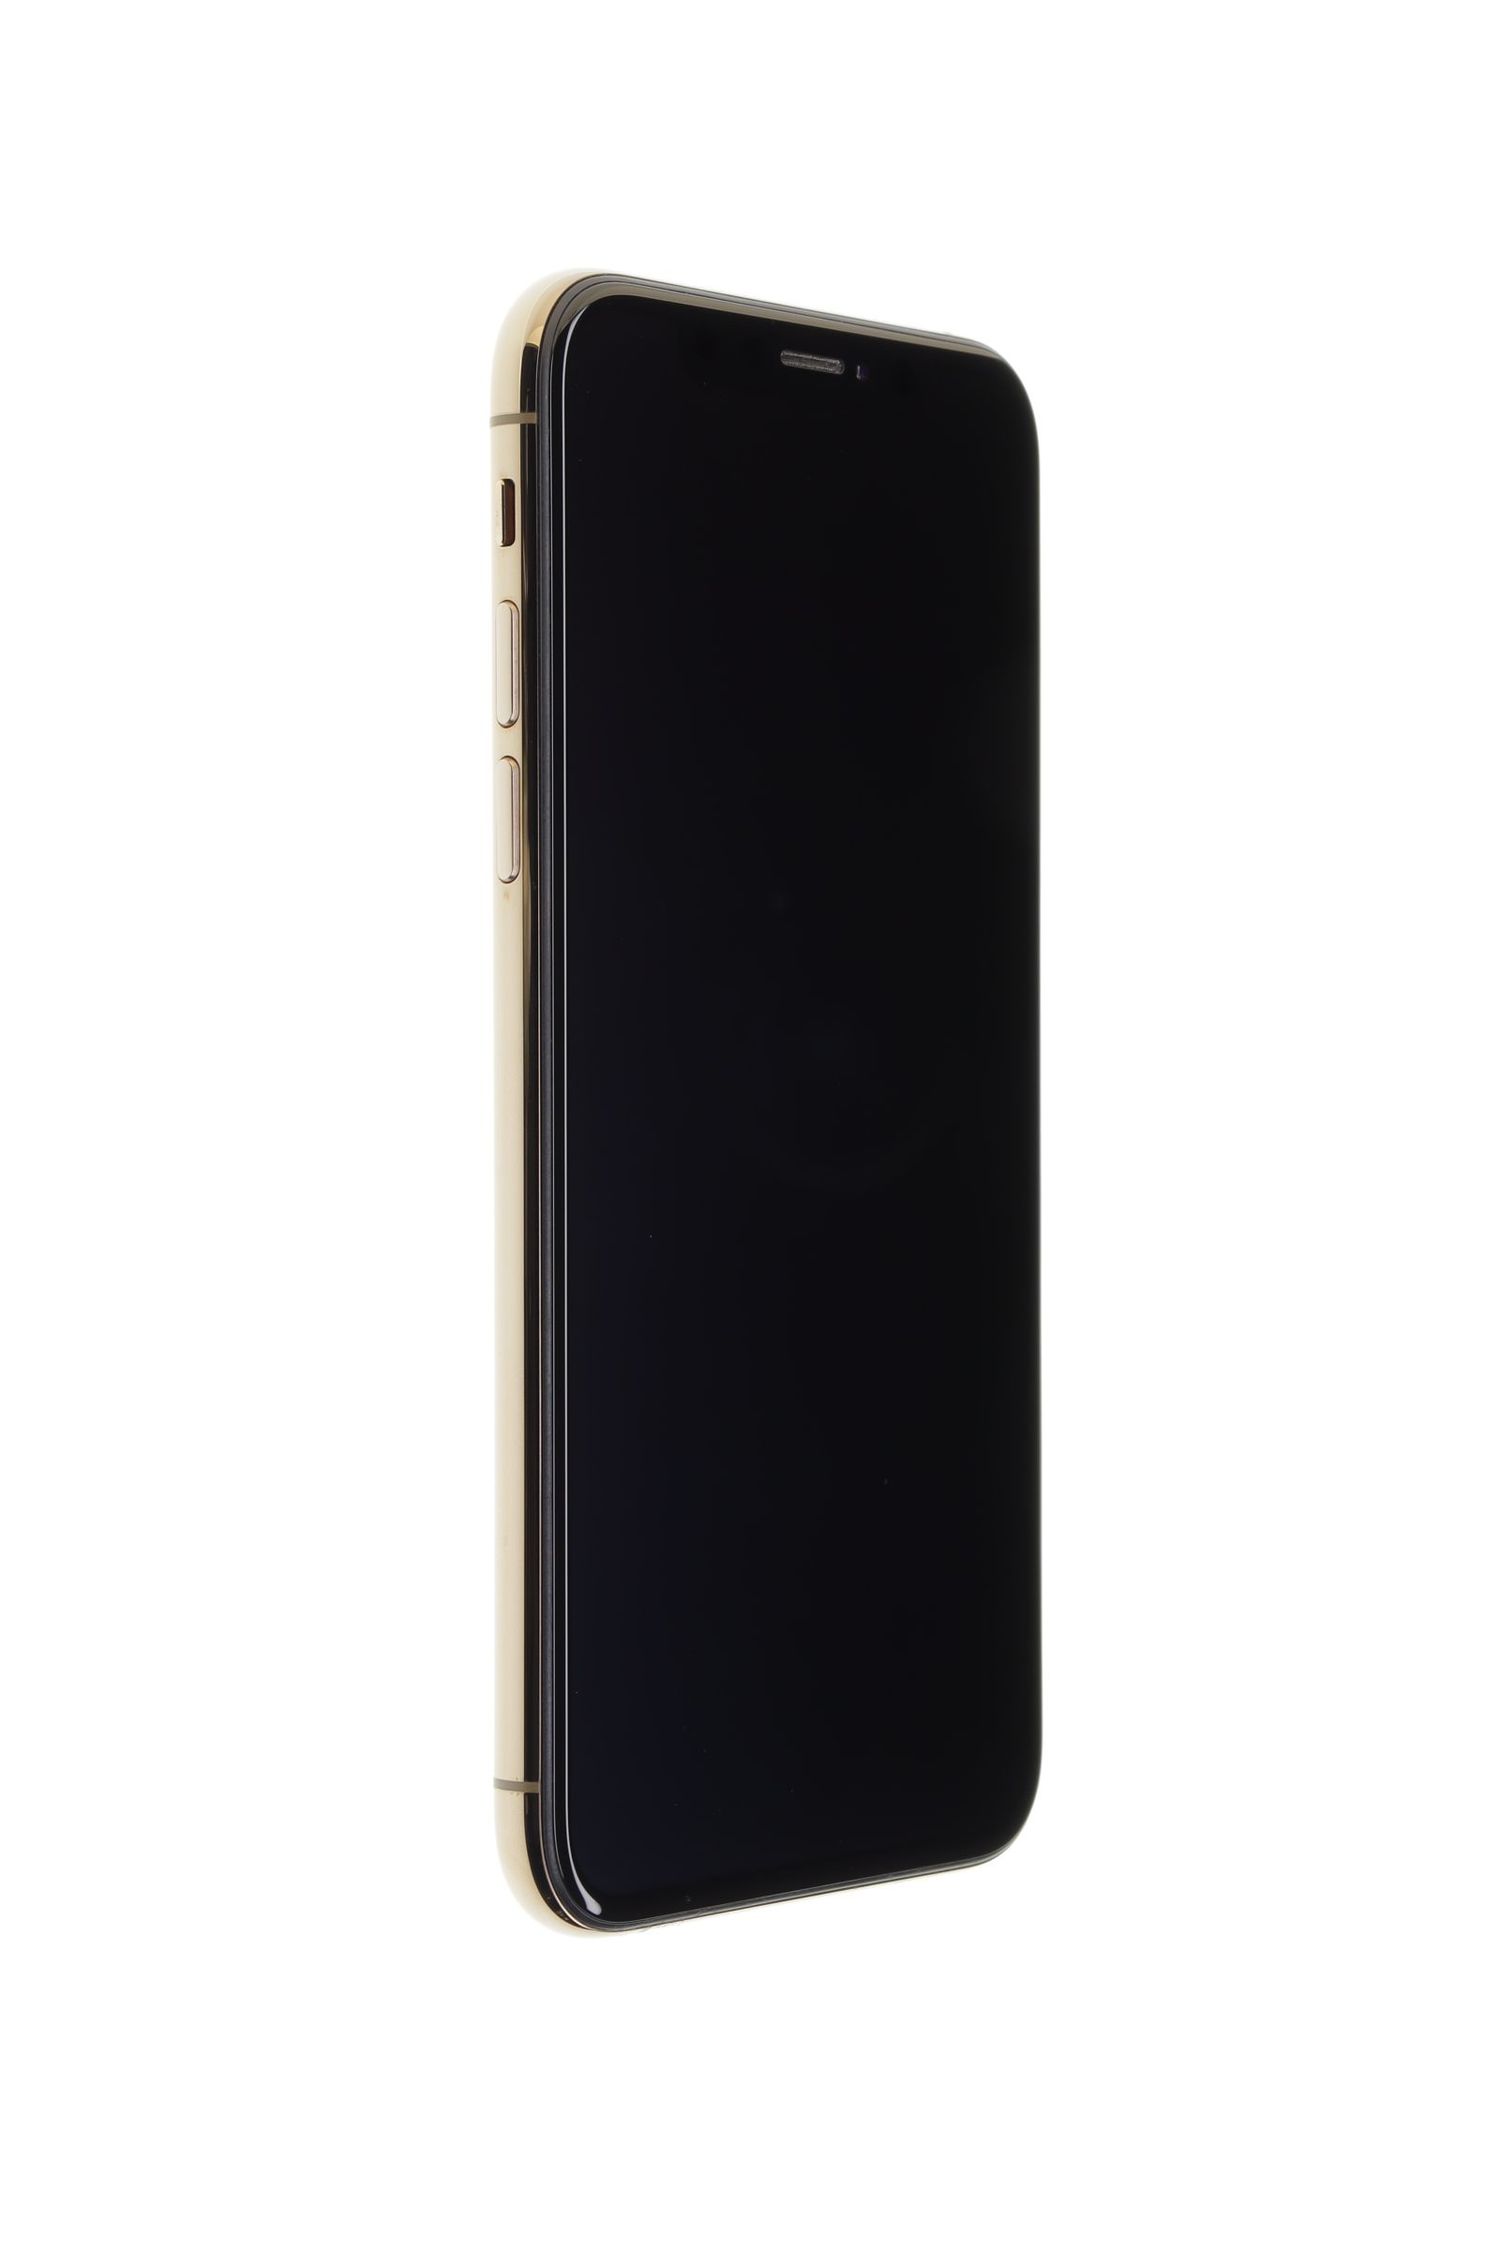 Мобилен телефон Apple iPhone XS, Gold, 64 GB, Excelent